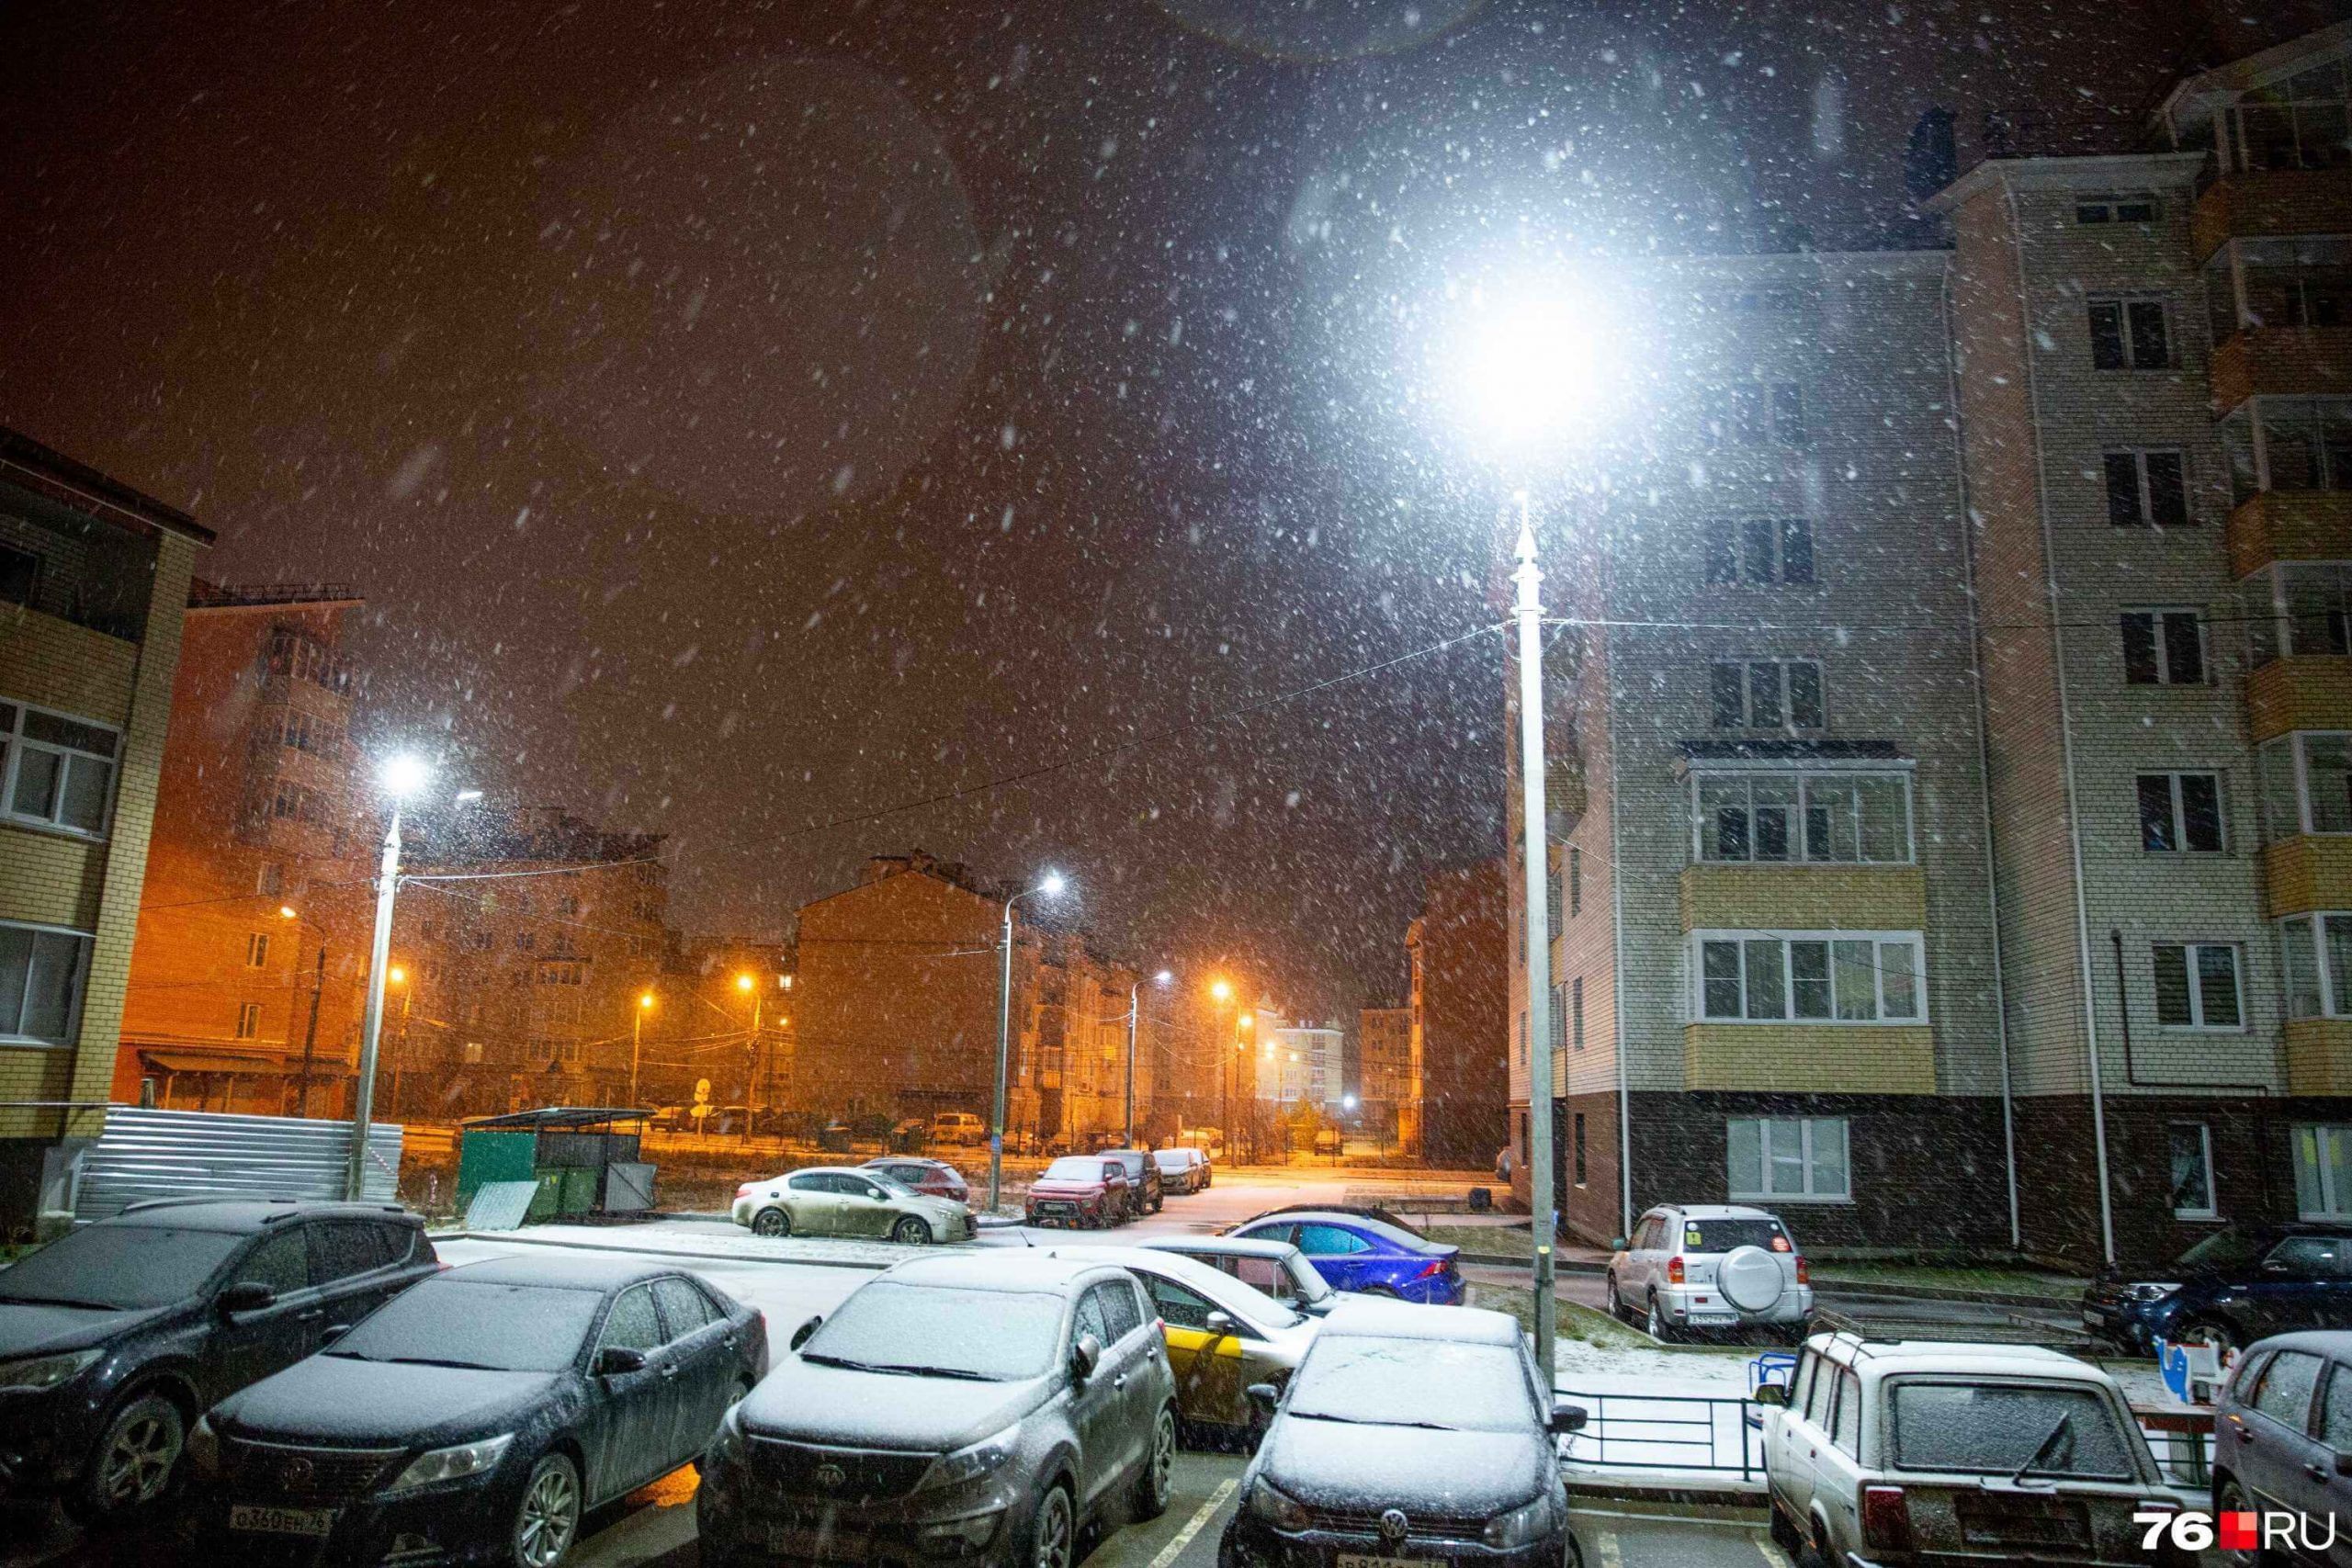 Утренние фотографии снежных городских улиц 010